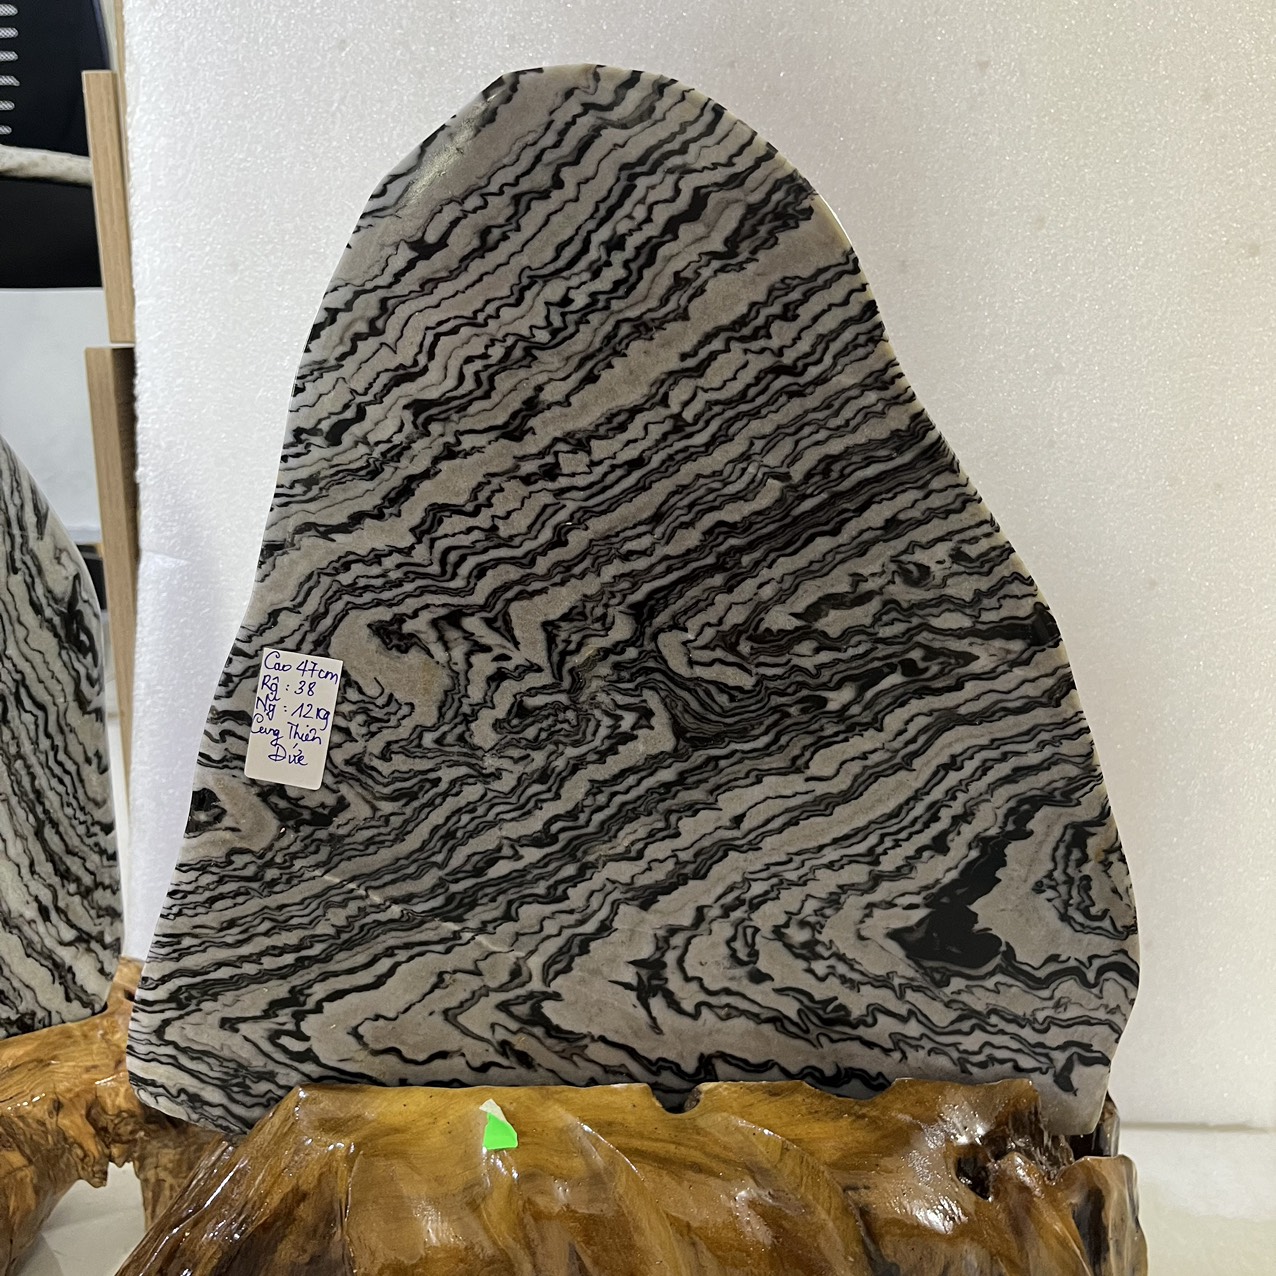 Đá phong thủy tự nhiên trấn trạch vân đen trắng Cao 47 cm nặng 12 kg NHƯ BỨC TRANH SƠN THỦY gồm chân đế gỗ rừng.